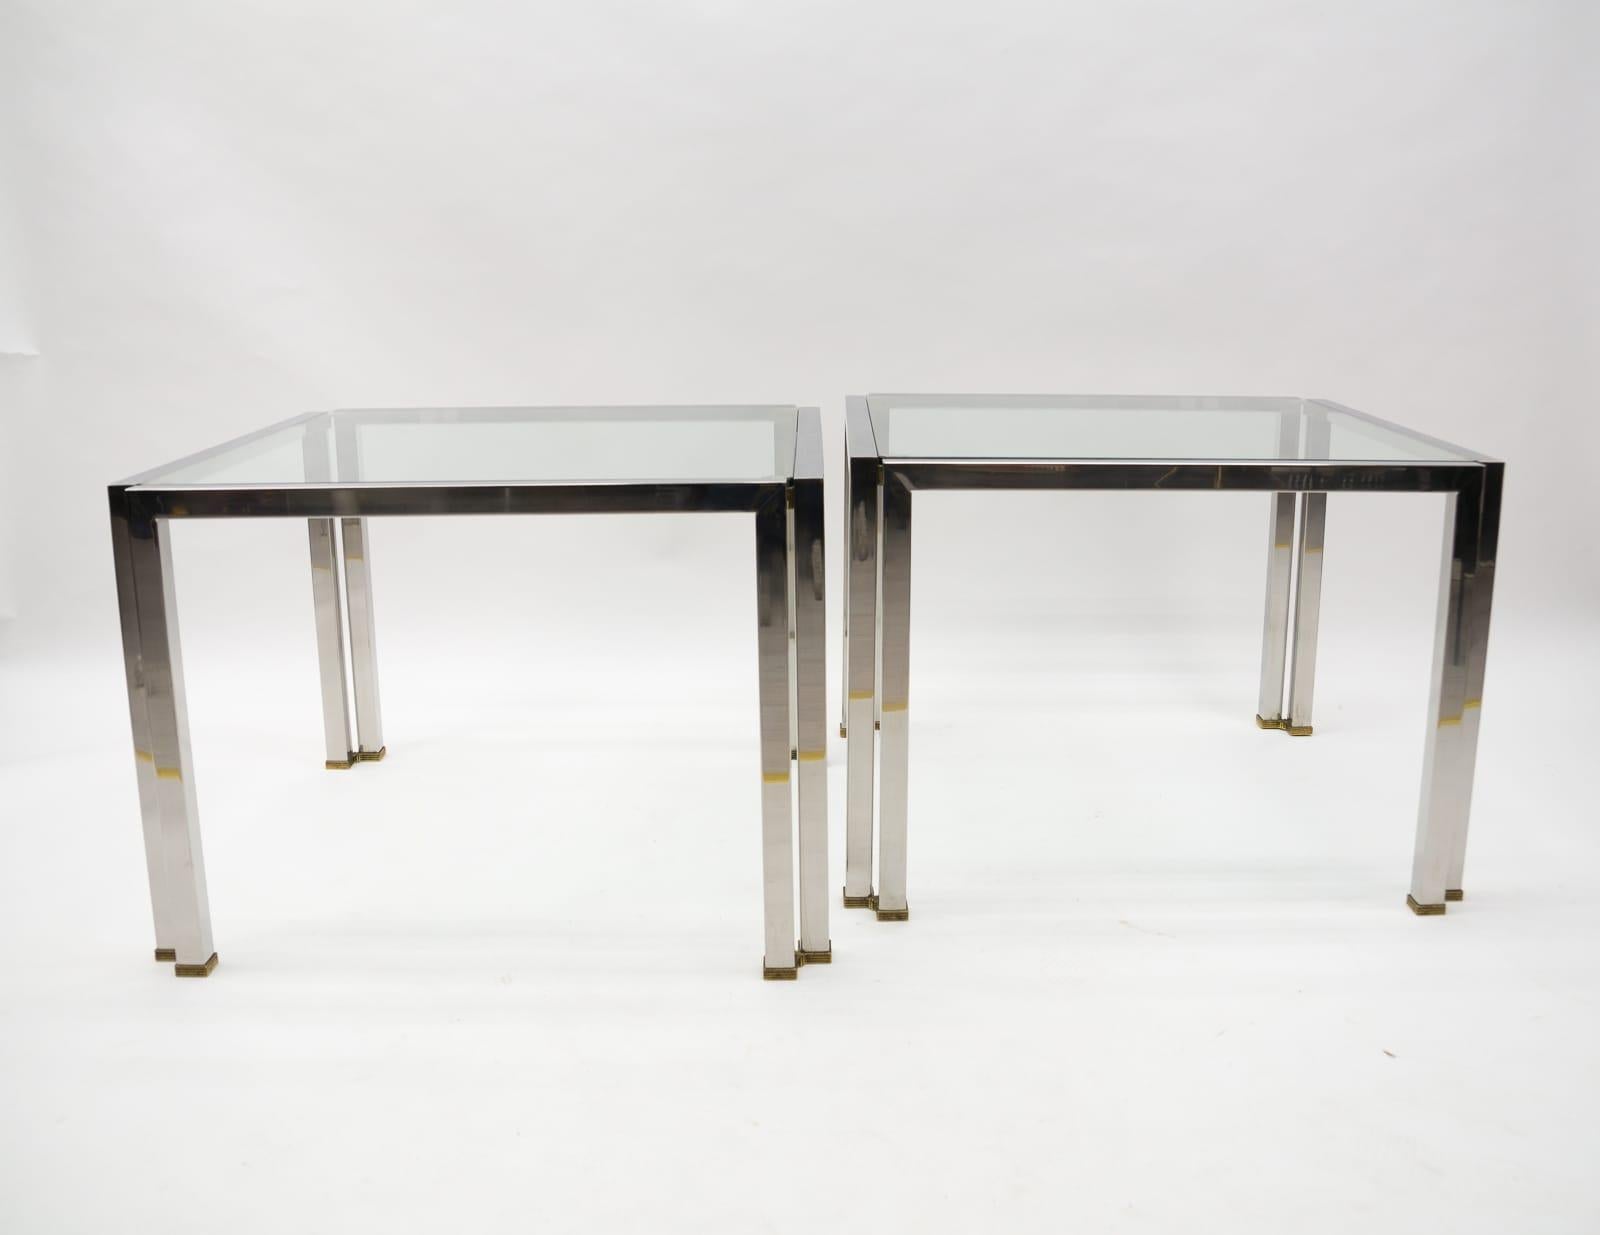 Cette table d'appoint en laiton et en verre a été conçue par Peter Ghyczy au début des années 1970 aux Pays-Bas. Né à Budapest, Peter Ghyczy a commencé sa carrière d'architecte en Allemagne. Il vit aux Pays-Bas depuis de nombreuses années et c'est